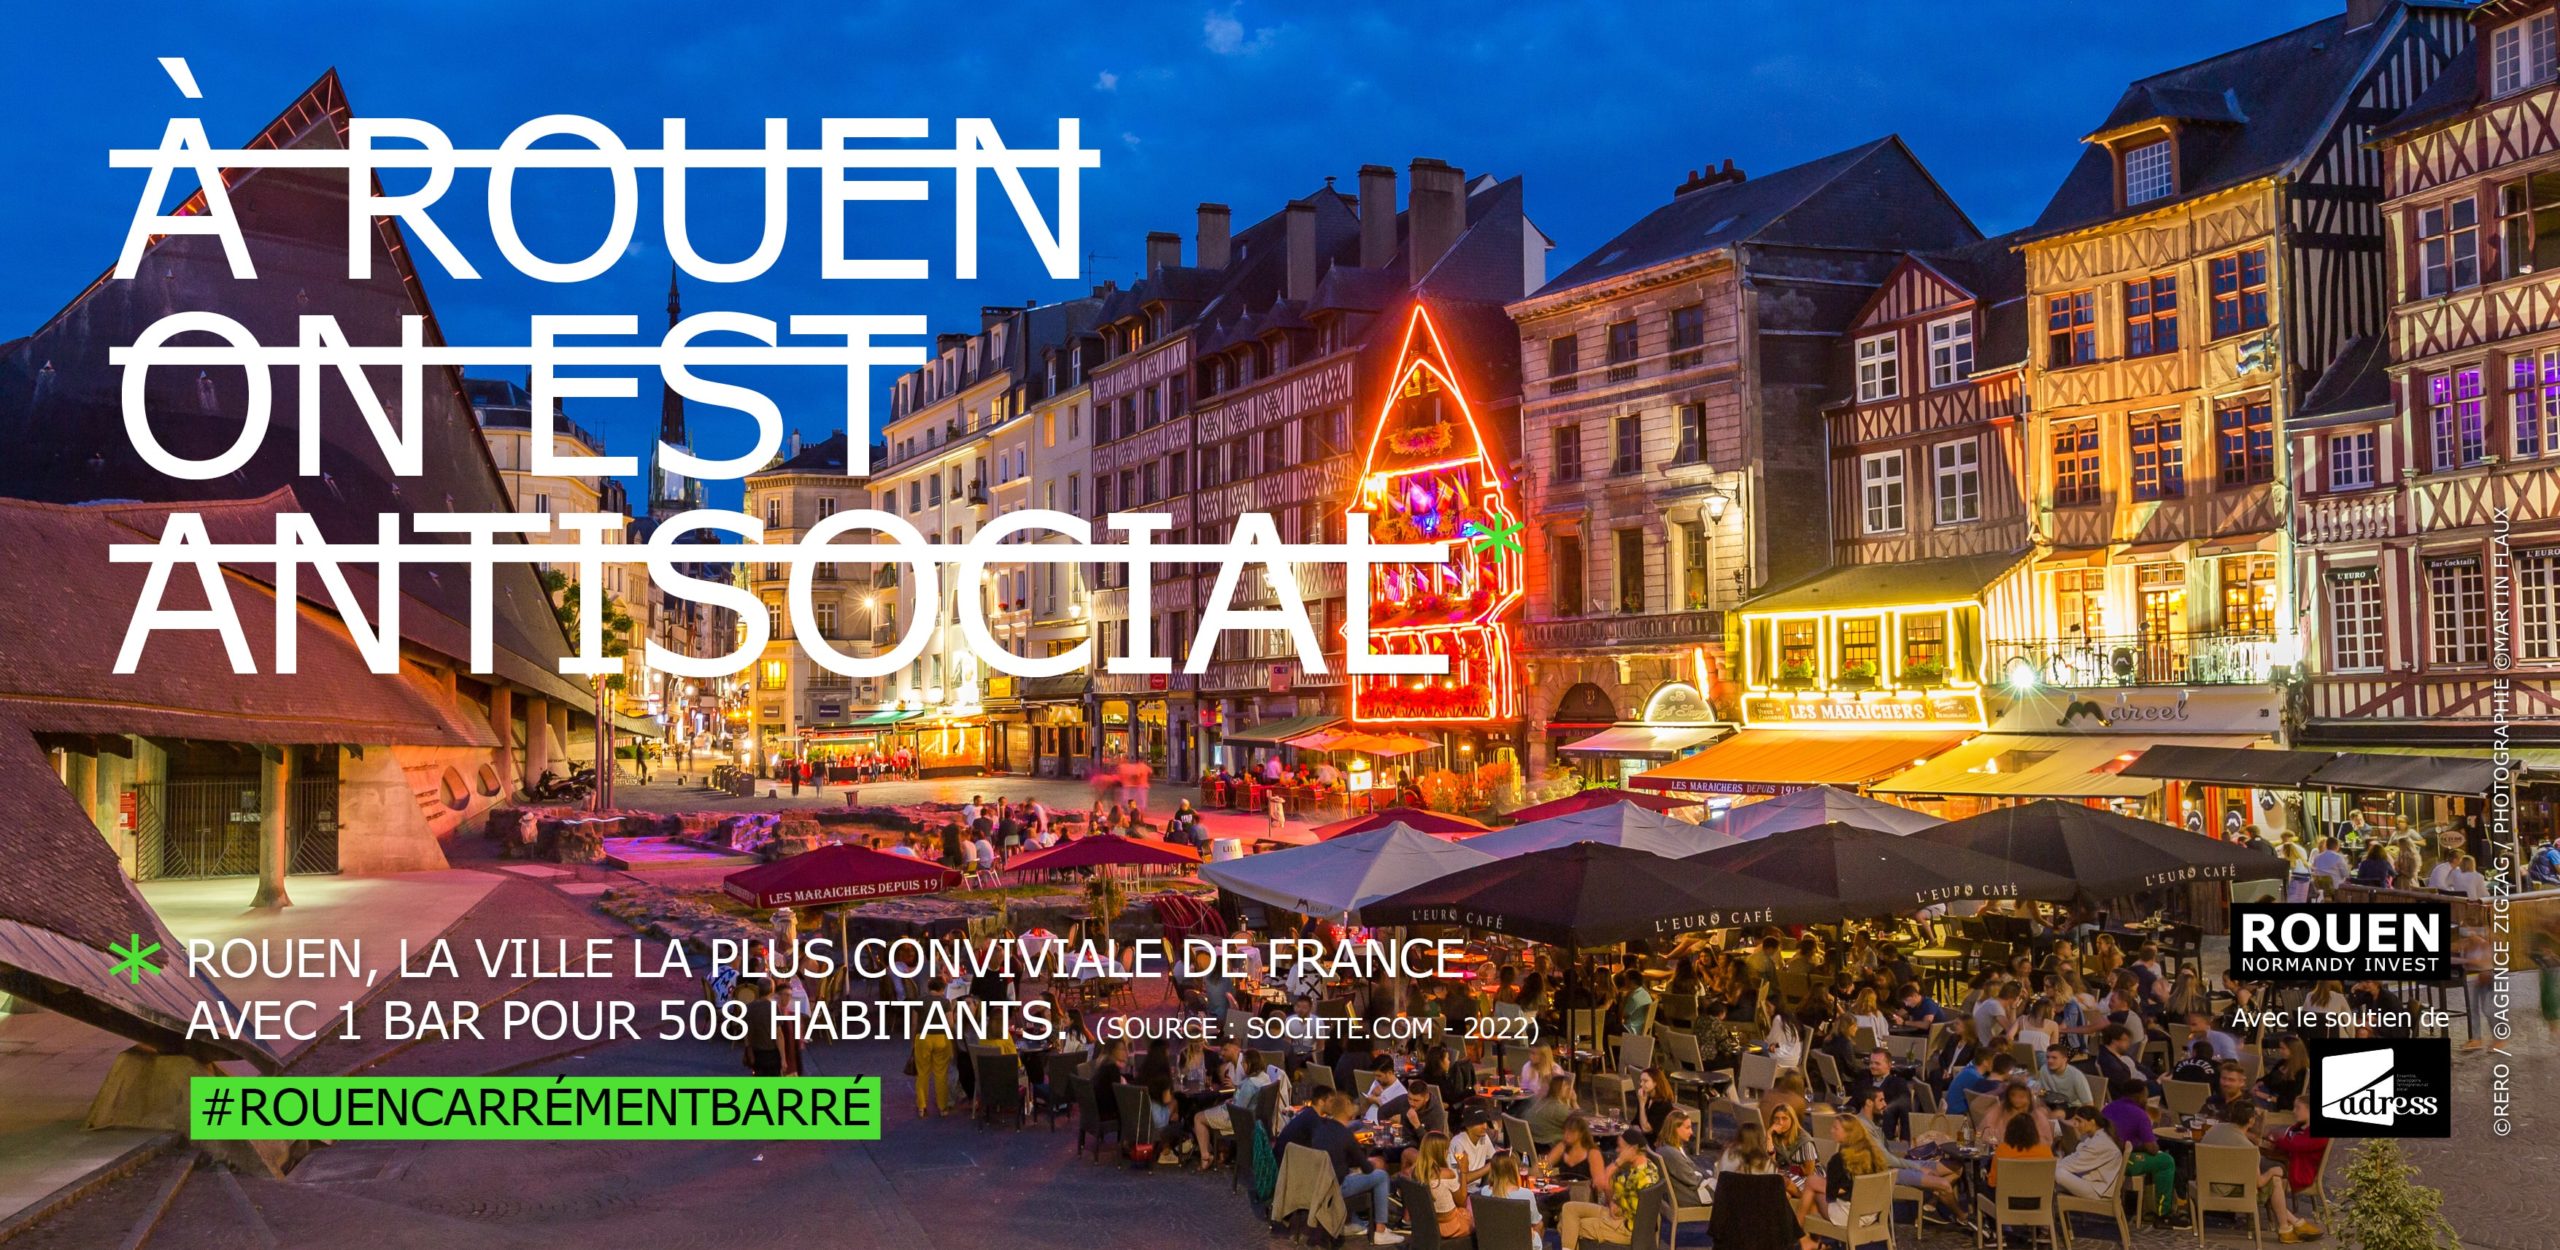 Rouen antisocial